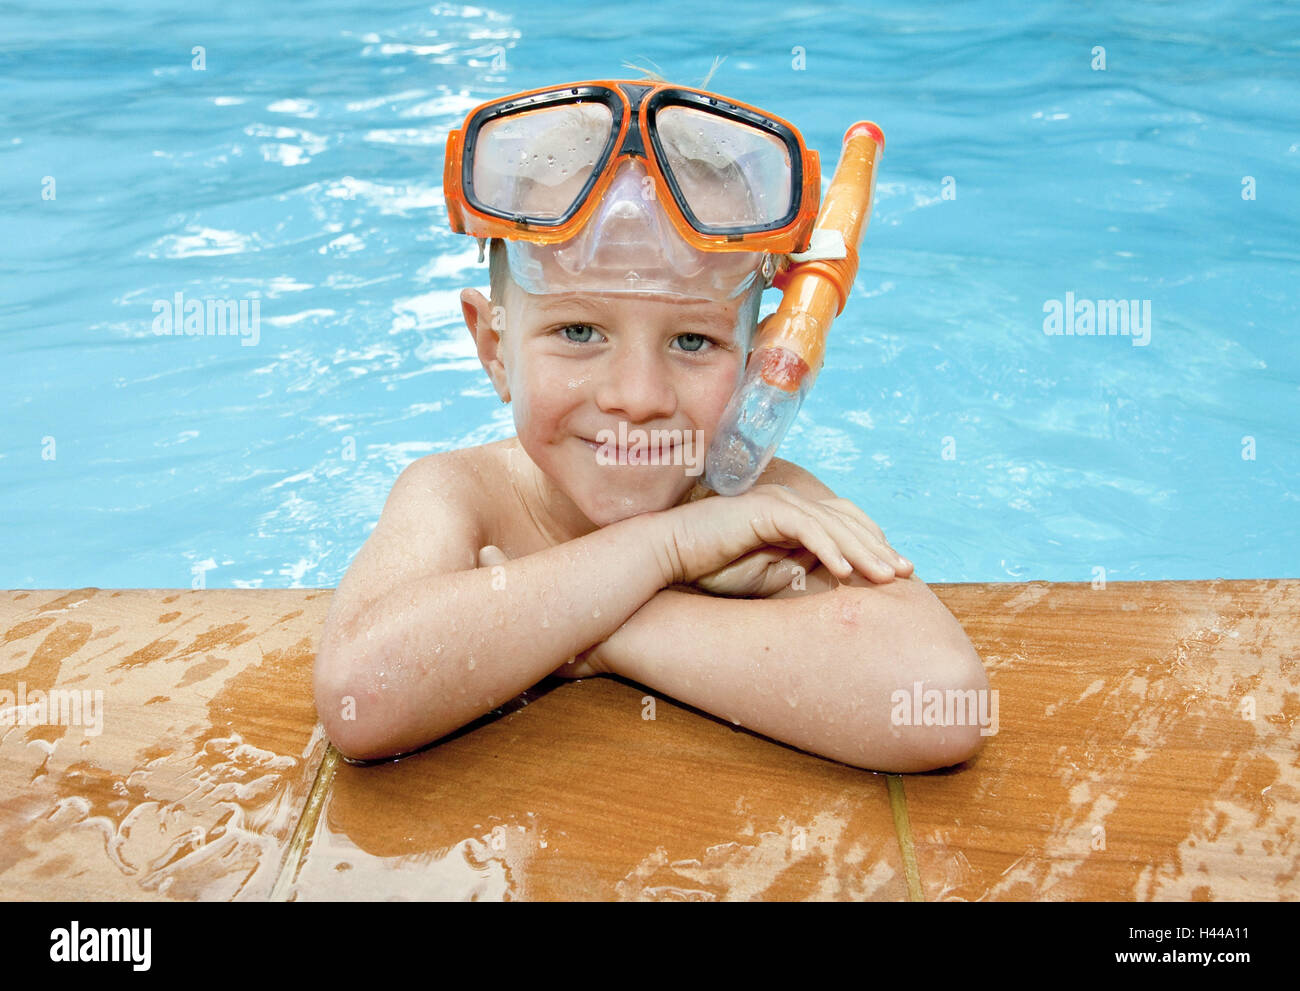 Thailandia, isola di Phuket, margine di piscina, boy, subacqueo occhiali, ritratto, Foto Stock